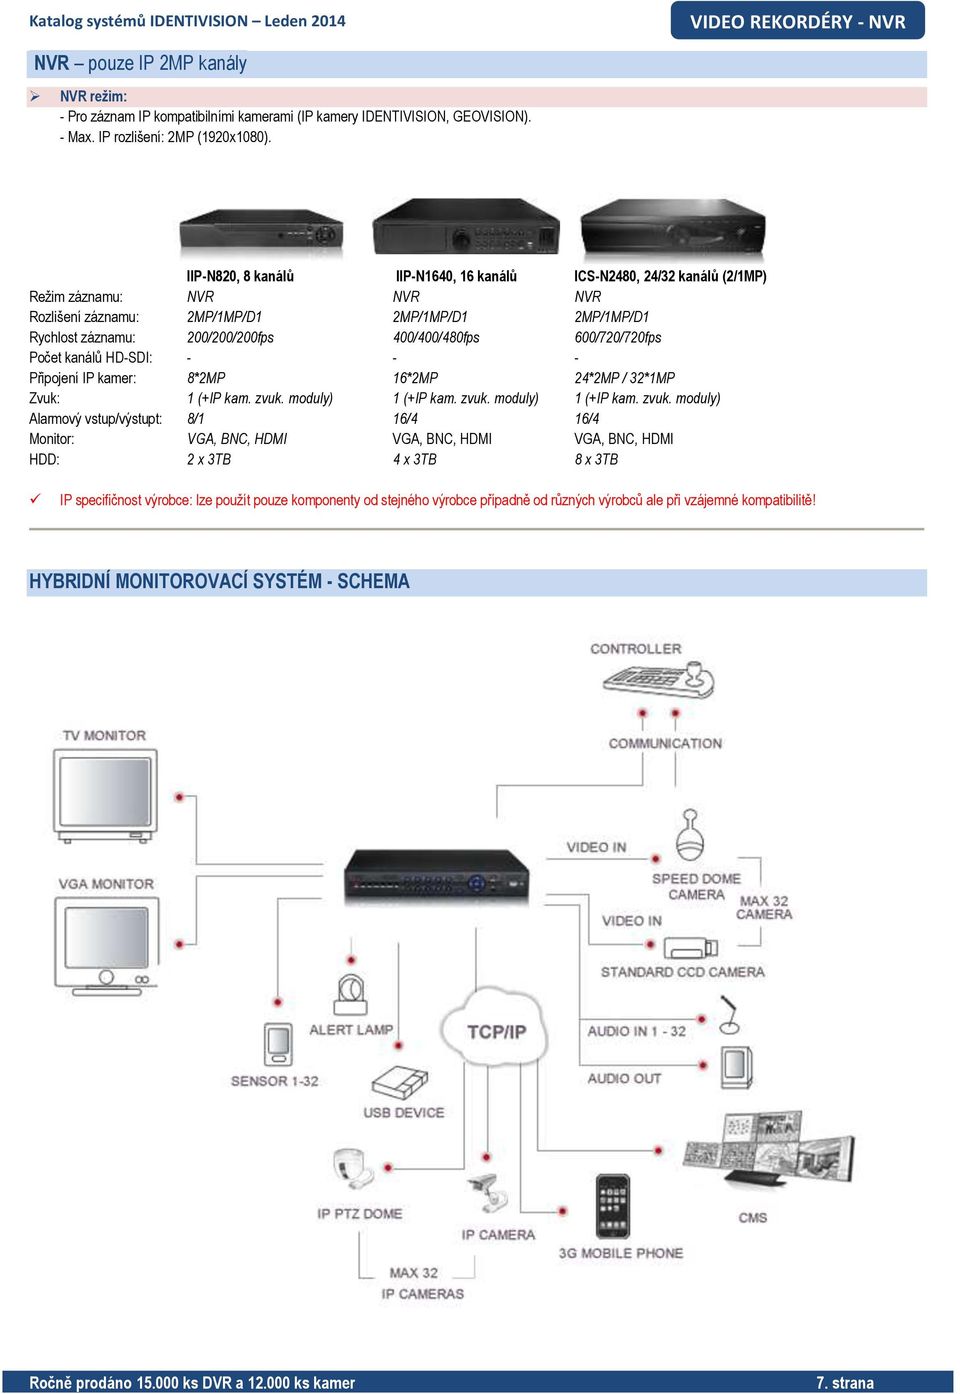 600/720/720fps Počet kanálů HD-SDI: - - - Připojení IP kamer: 8*2MP 16*2MP 24*2MP / 32*1MP Zvuk: 1 (+IP kam. zvuk.